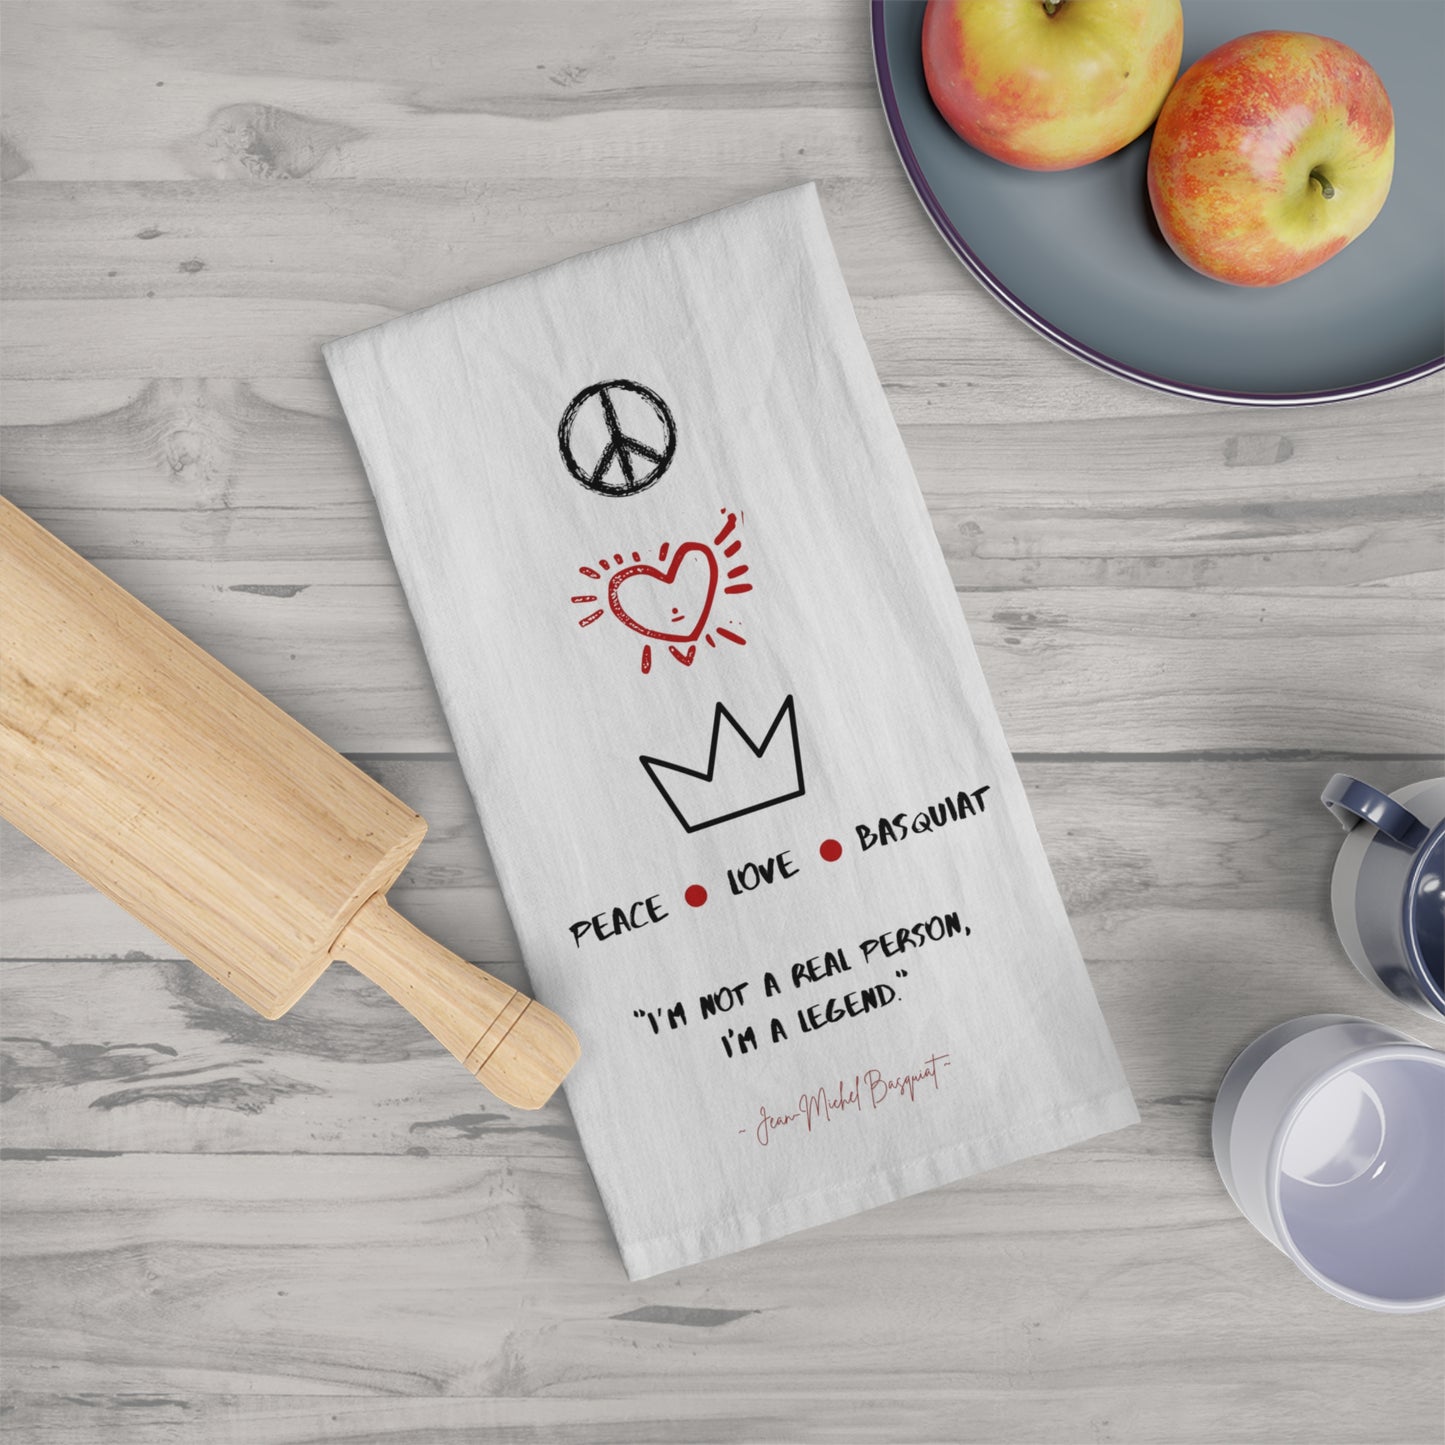 Basquiat Inspired Tea & Kitchen Towel